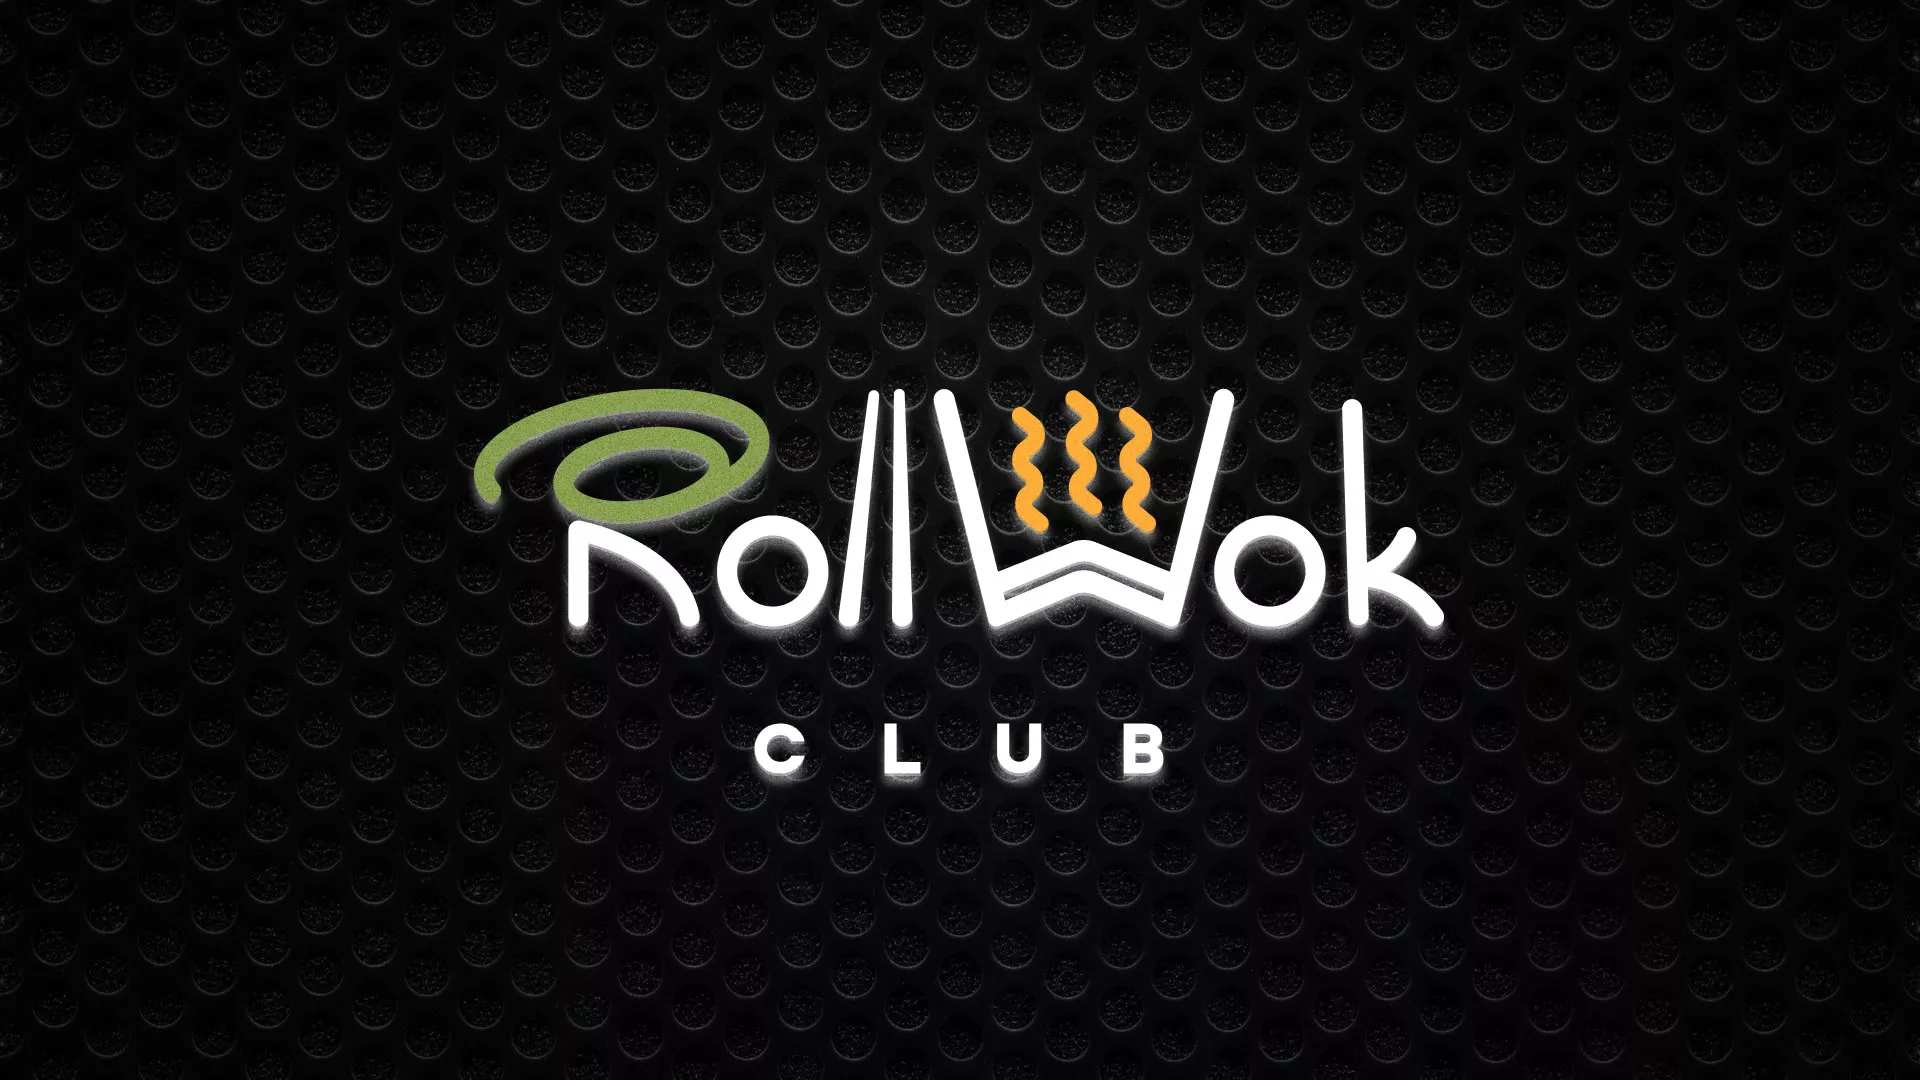 Брендирование торговых точек суши-бара «Roll Wok Club» в Белозерске